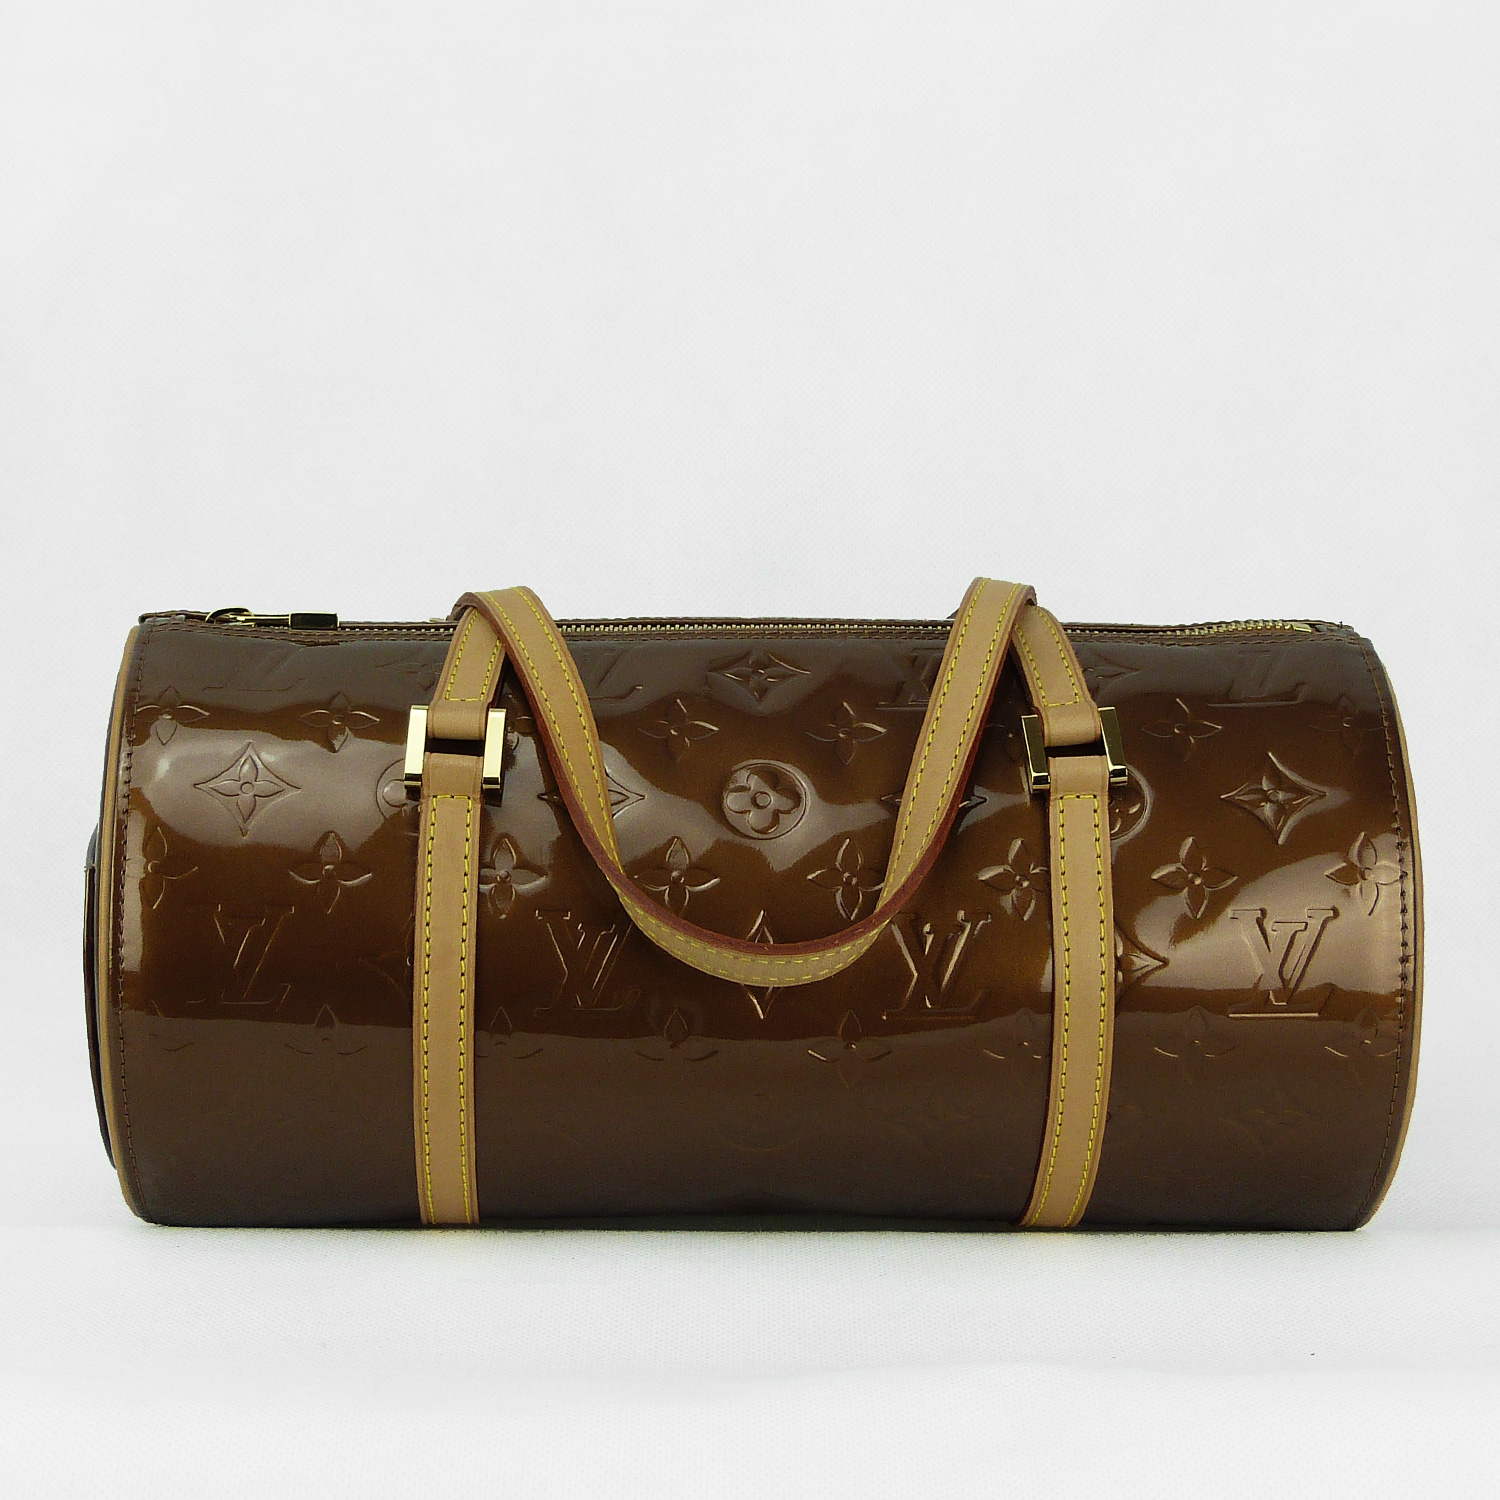 Sac à main Louis Vuitton Bedford Authentique d'occasion en cuir vernis couleur bronze + 1 multi-clés 4 Louis Vuitton assorti au sac